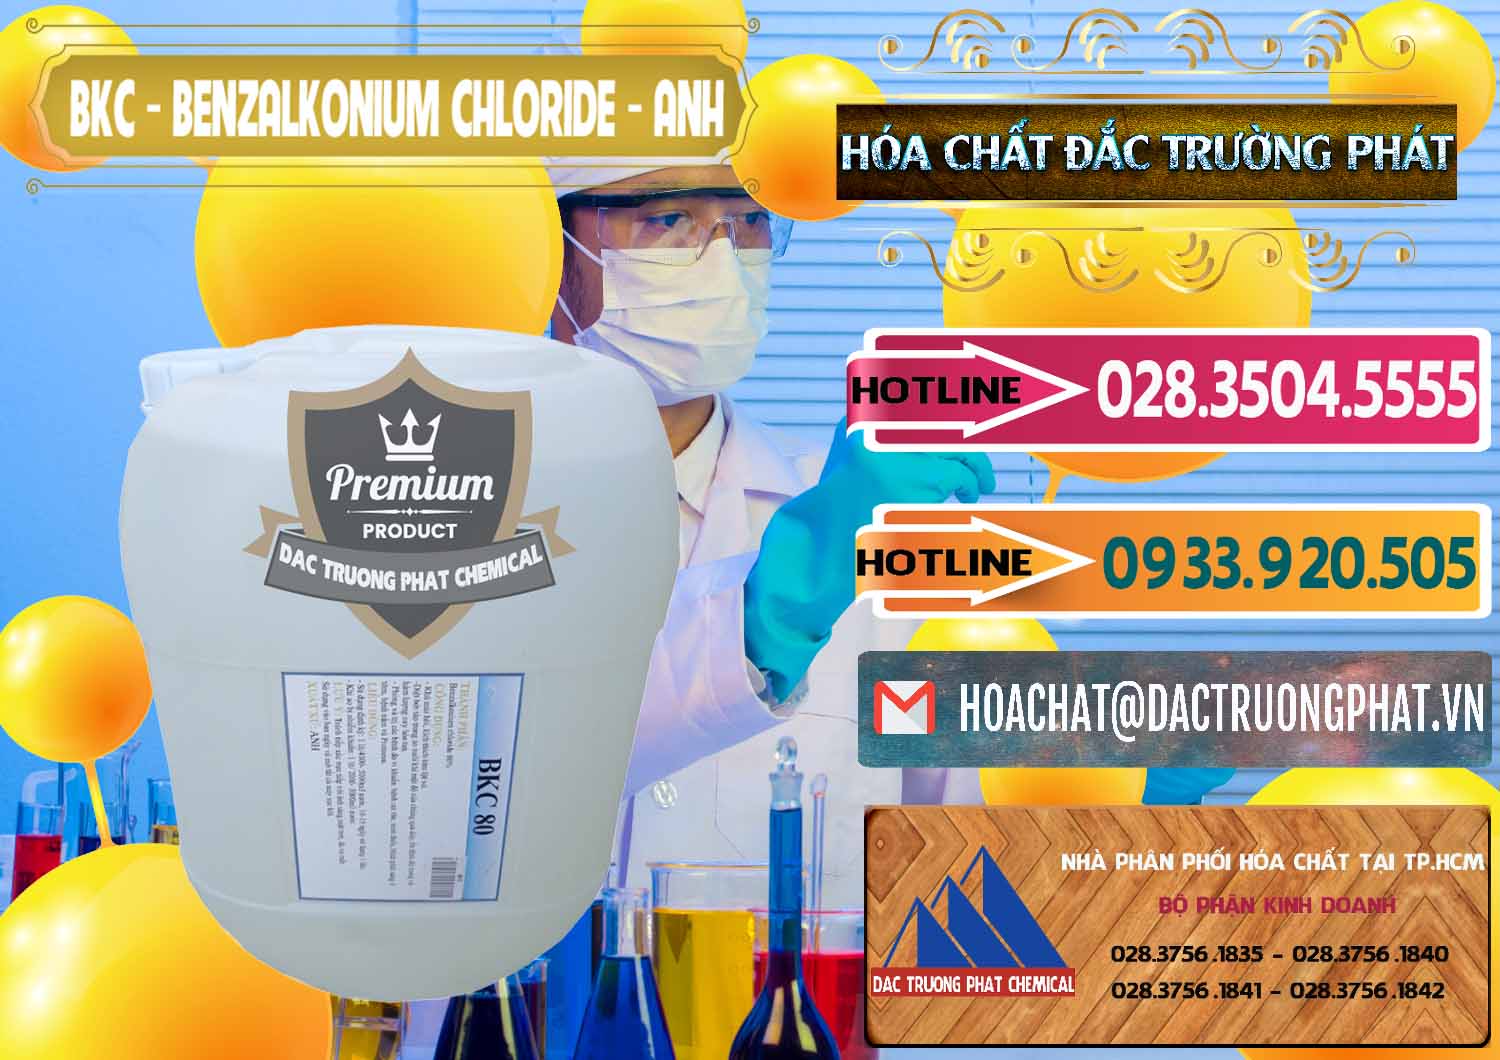 Chuyên bán ( cung ứng ) BKC - Benzalkonium Chloride Anh Quốc Uk Kingdoms - 0415 - Công ty cung cấp & phân phối hóa chất tại TP.HCM - dactruongphat.vn